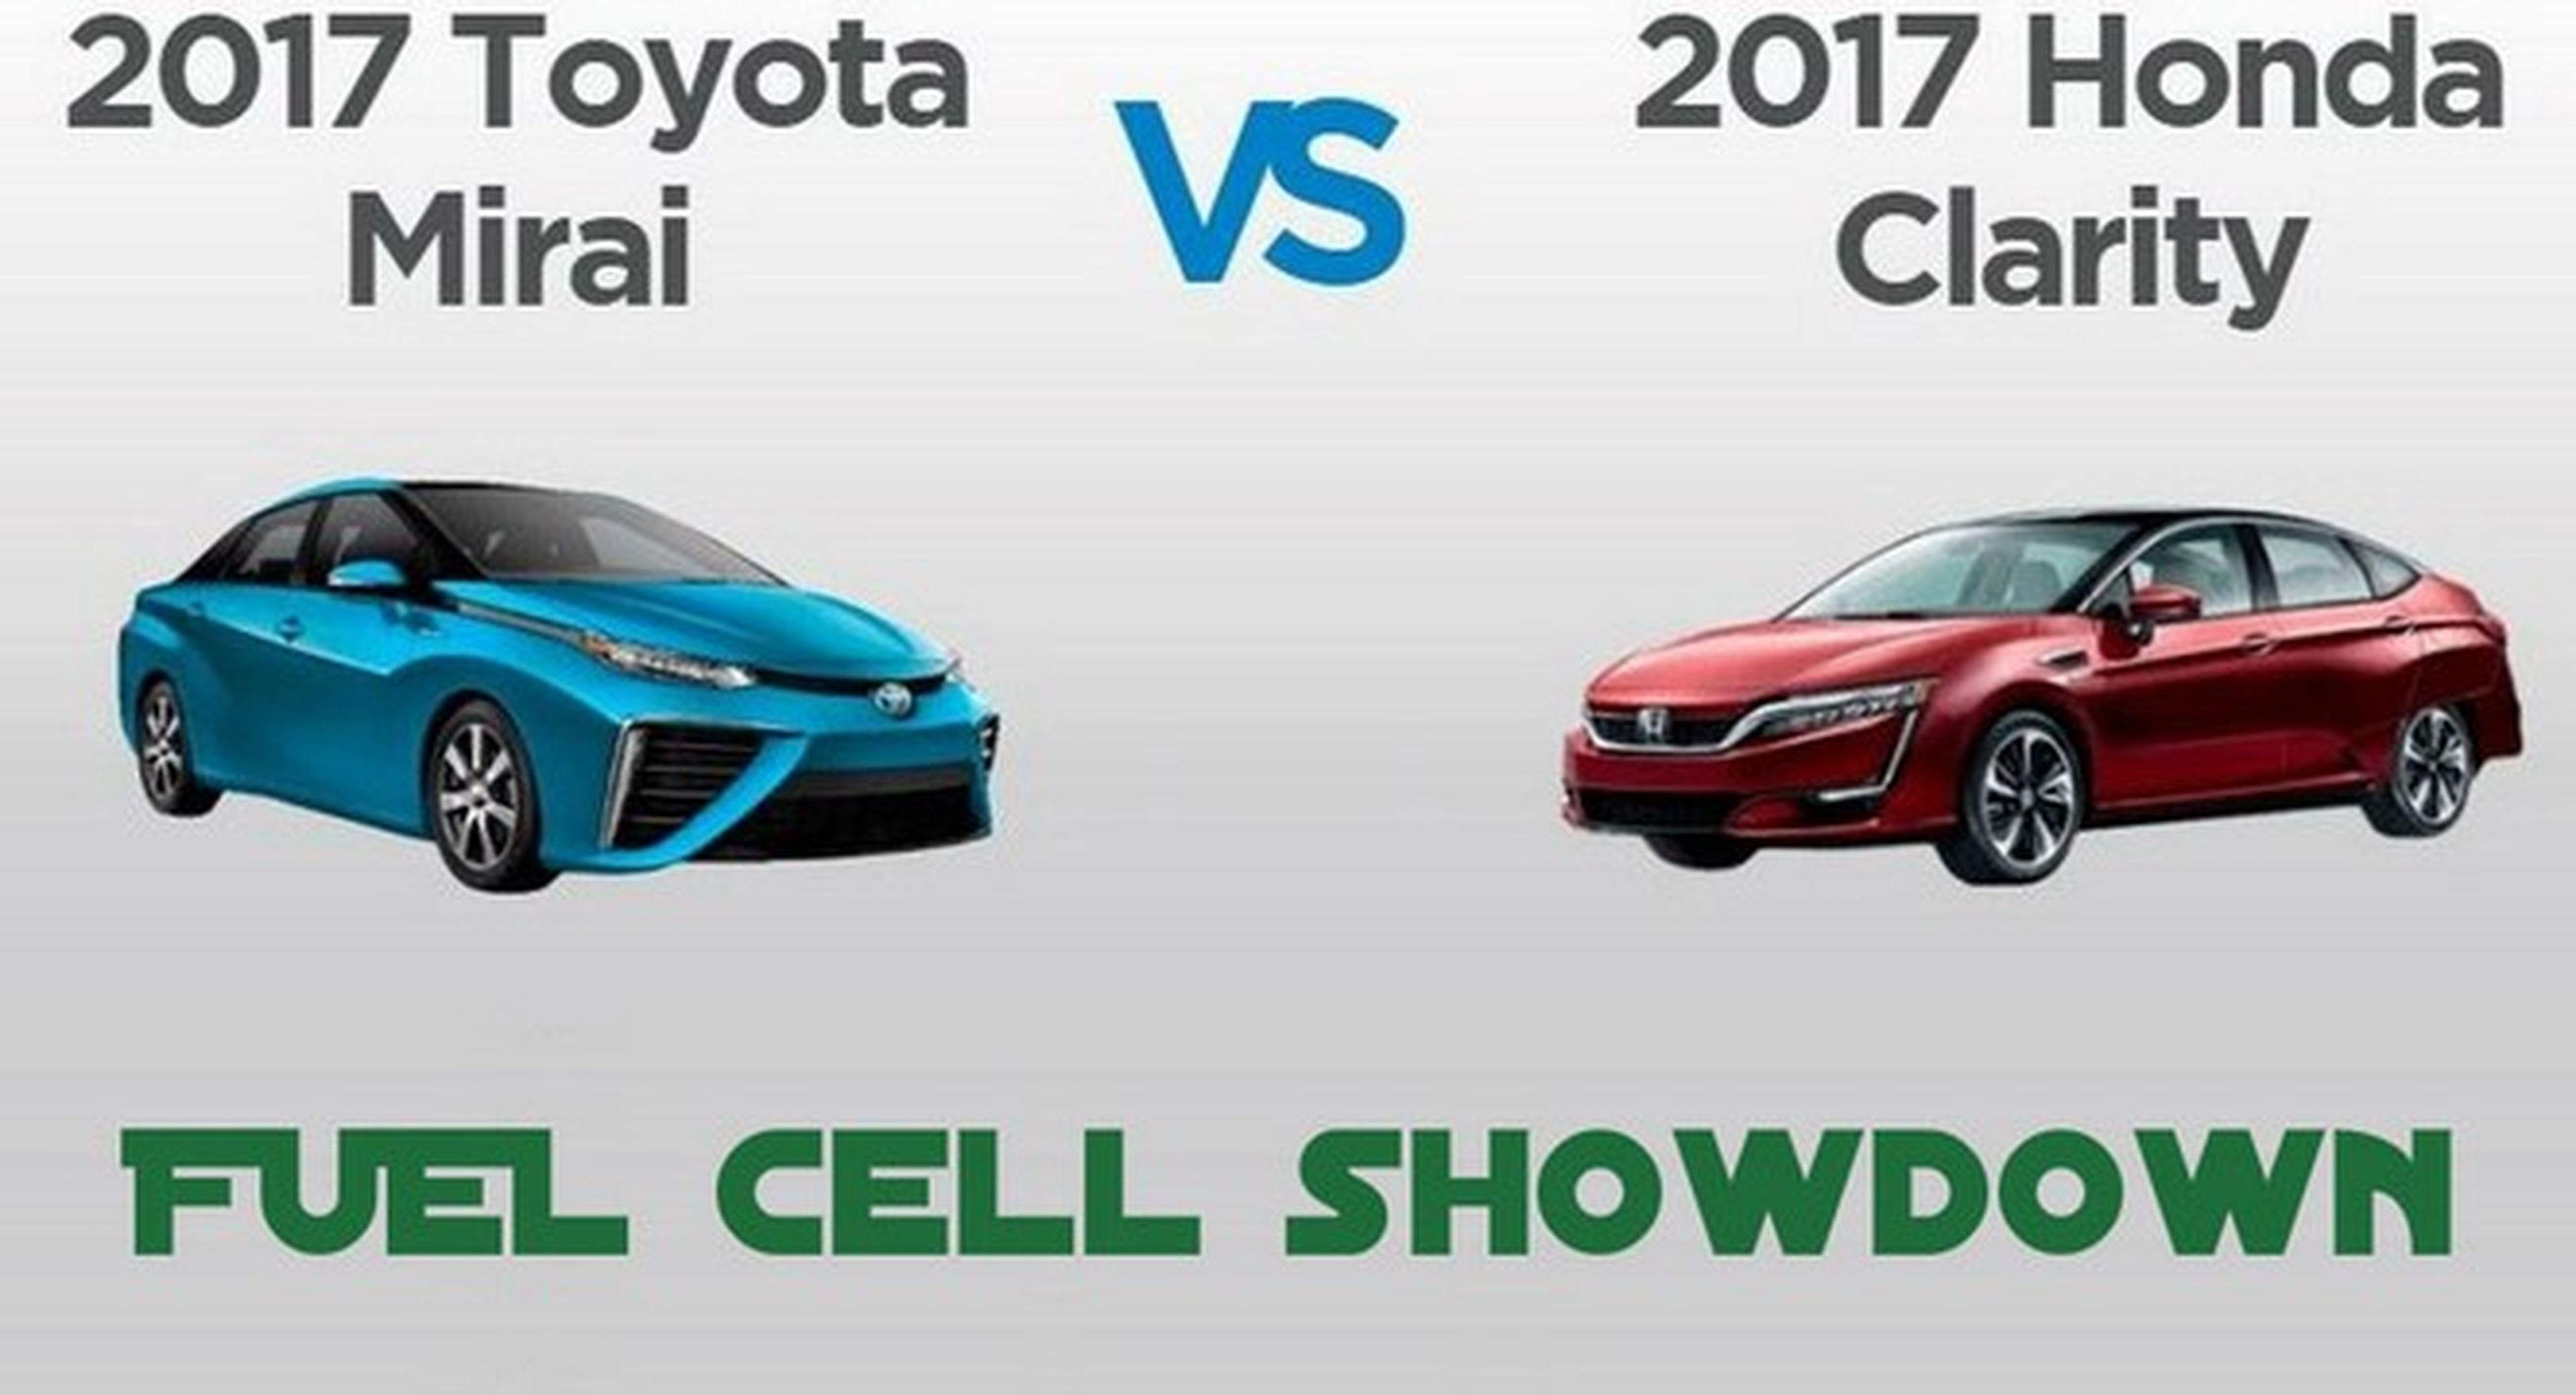 Hidrógeno al poder: Toyota Mirai VS Honda Clarity